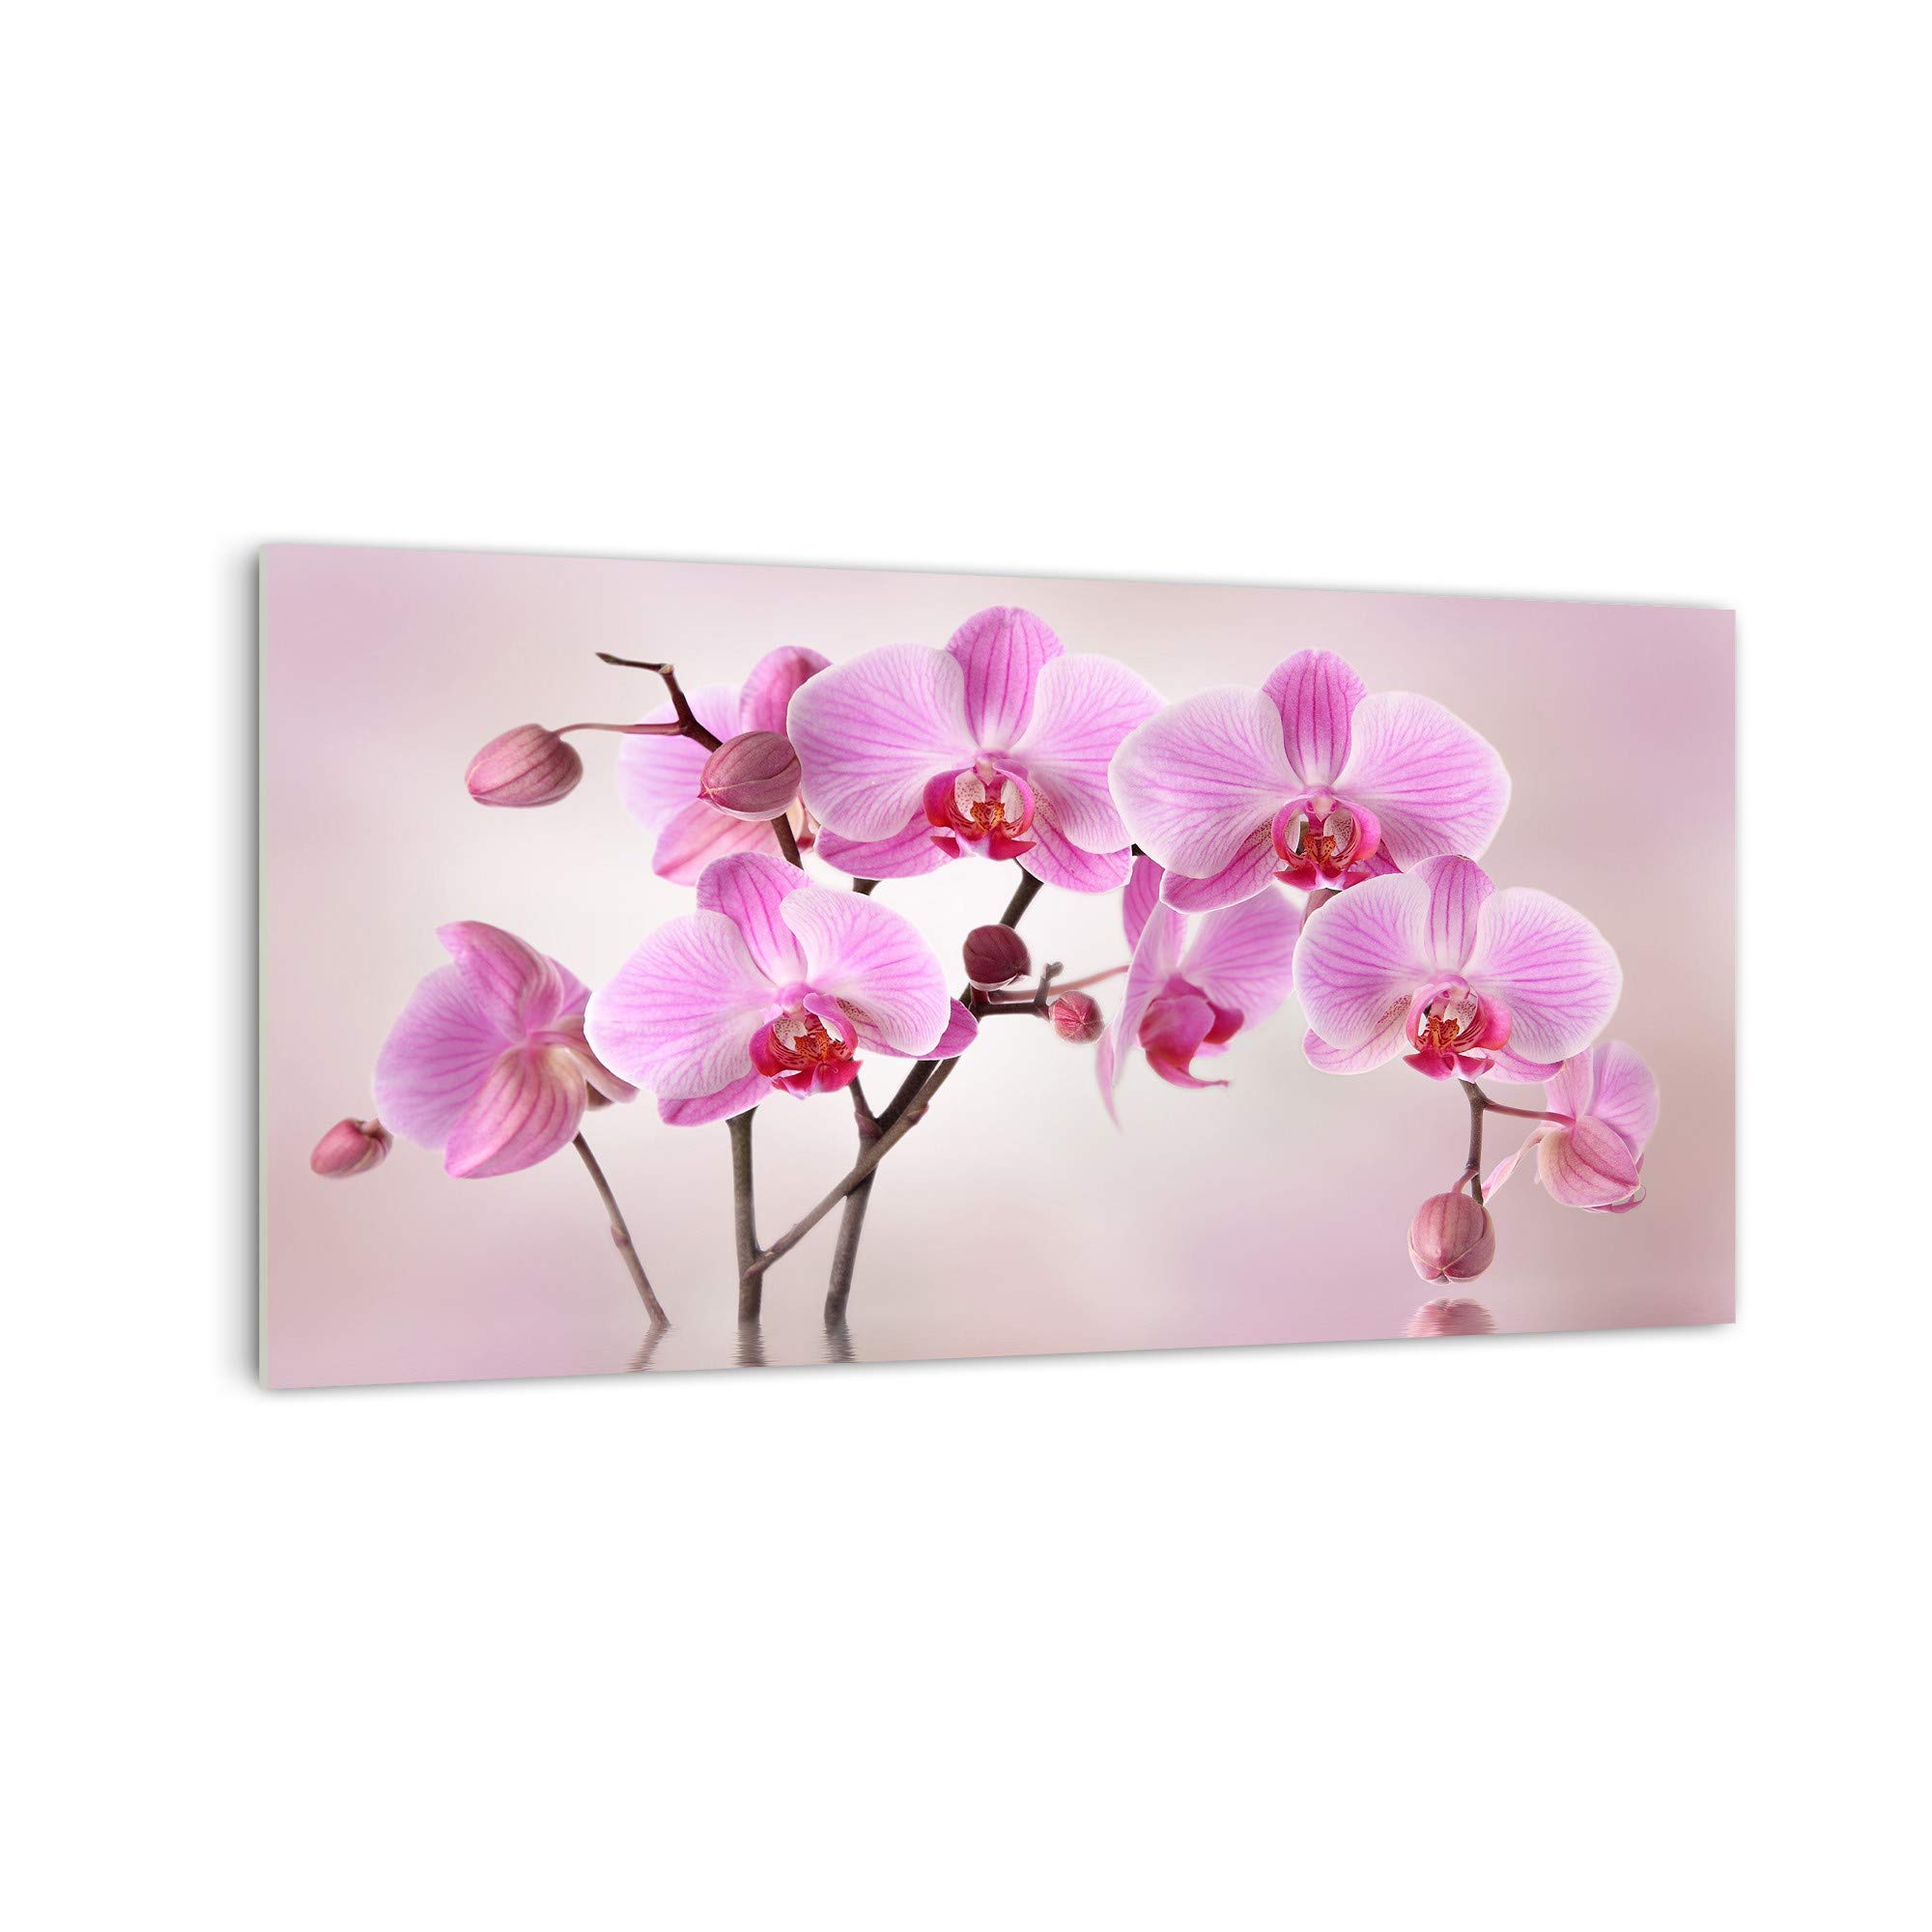 DekoGlas Küchenrückwand 'Orchideen auf Wasser' in div. Größen, Glas-Rückwand, Wandpaneele, Spritzschutz & Fliesenspiegel